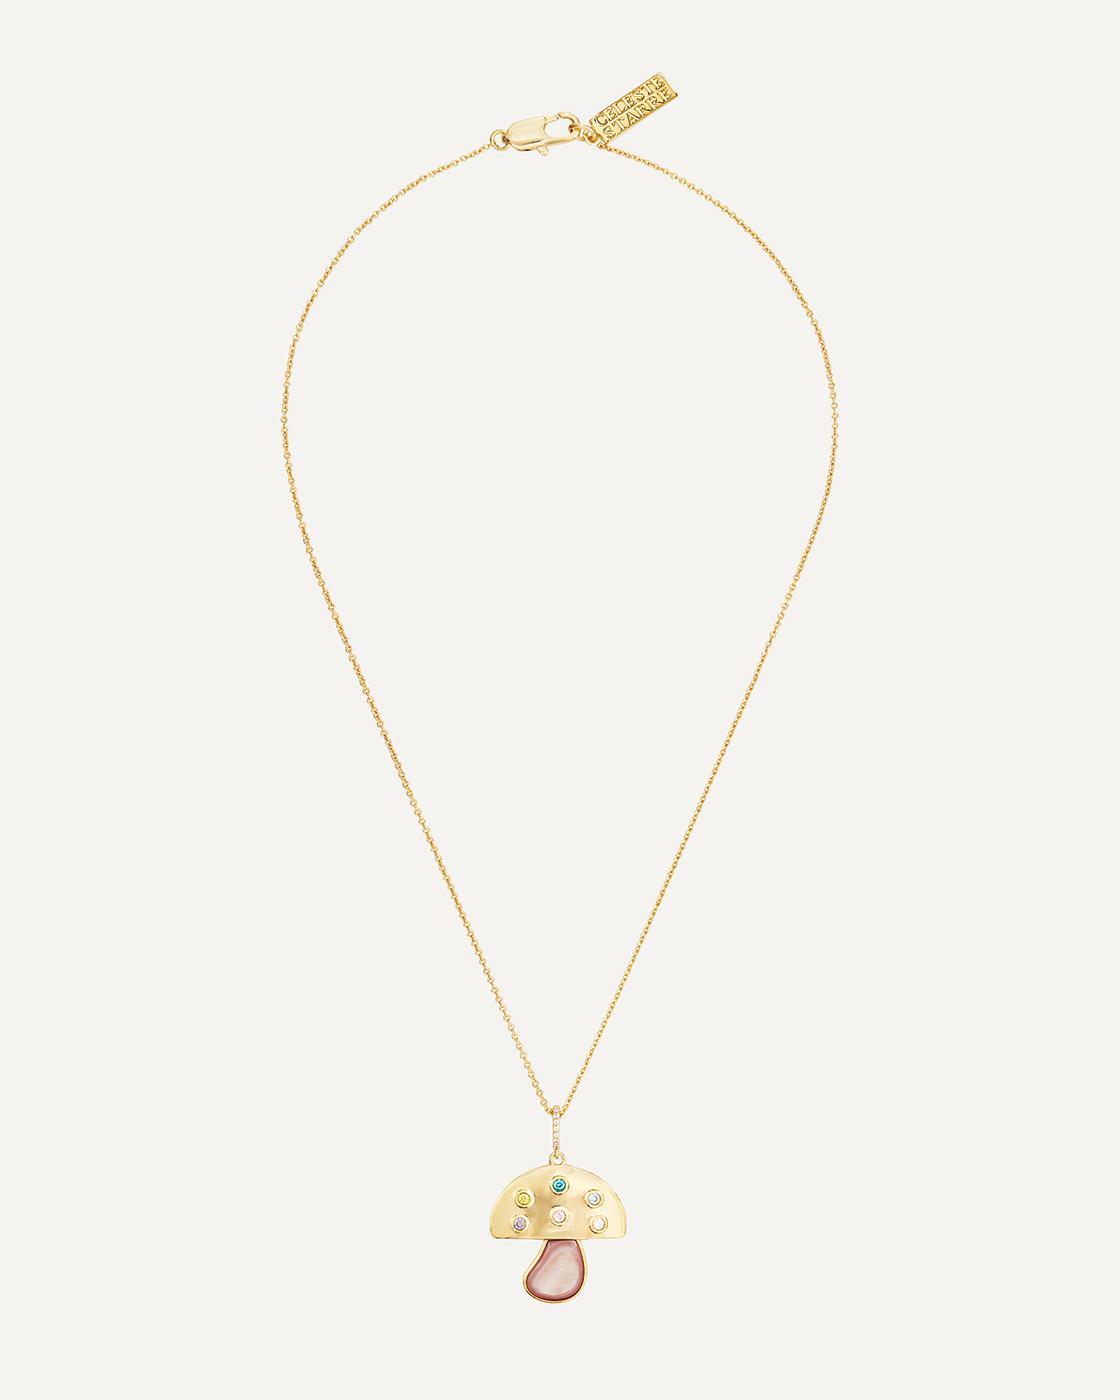 The Wonderland Vergoldete Halskette mit Rosafarbenem Perlenpilzanhänger